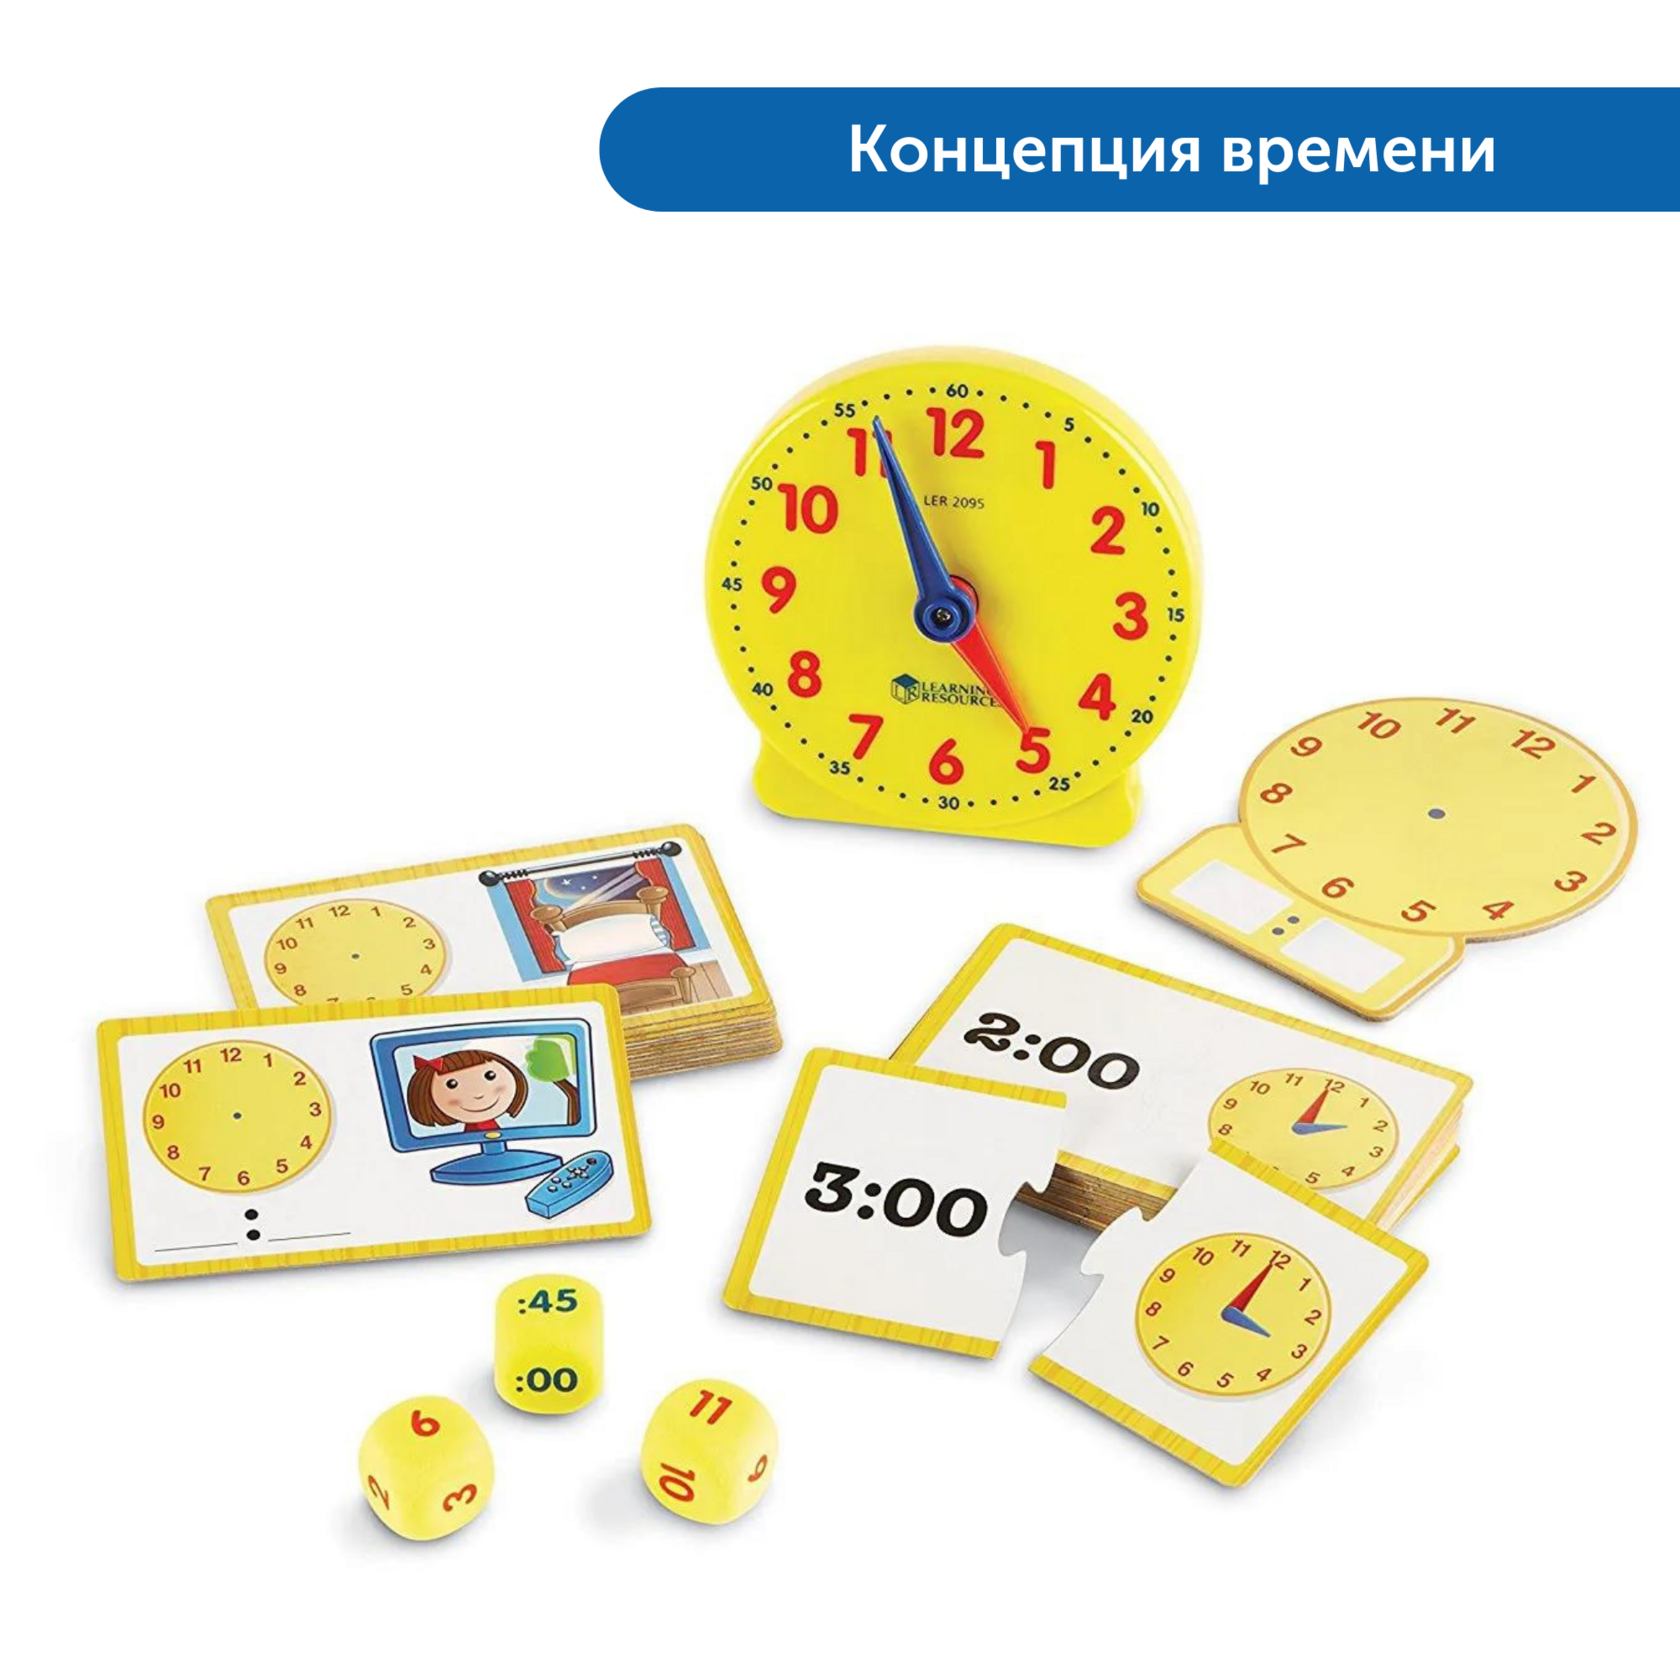 Дополнительные часы обучения. Обучающие часы. Игрушка для изучения часов. Часы игрушка для детей обучающие. Часы обучающие для детей.